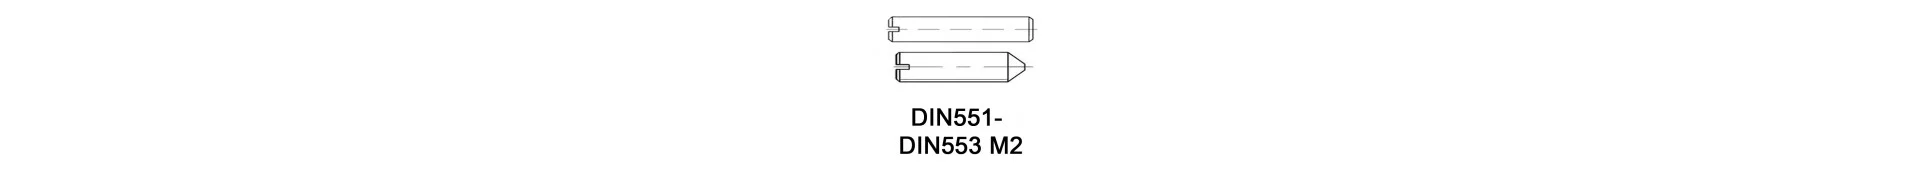 DIN551 - DIN553 M2